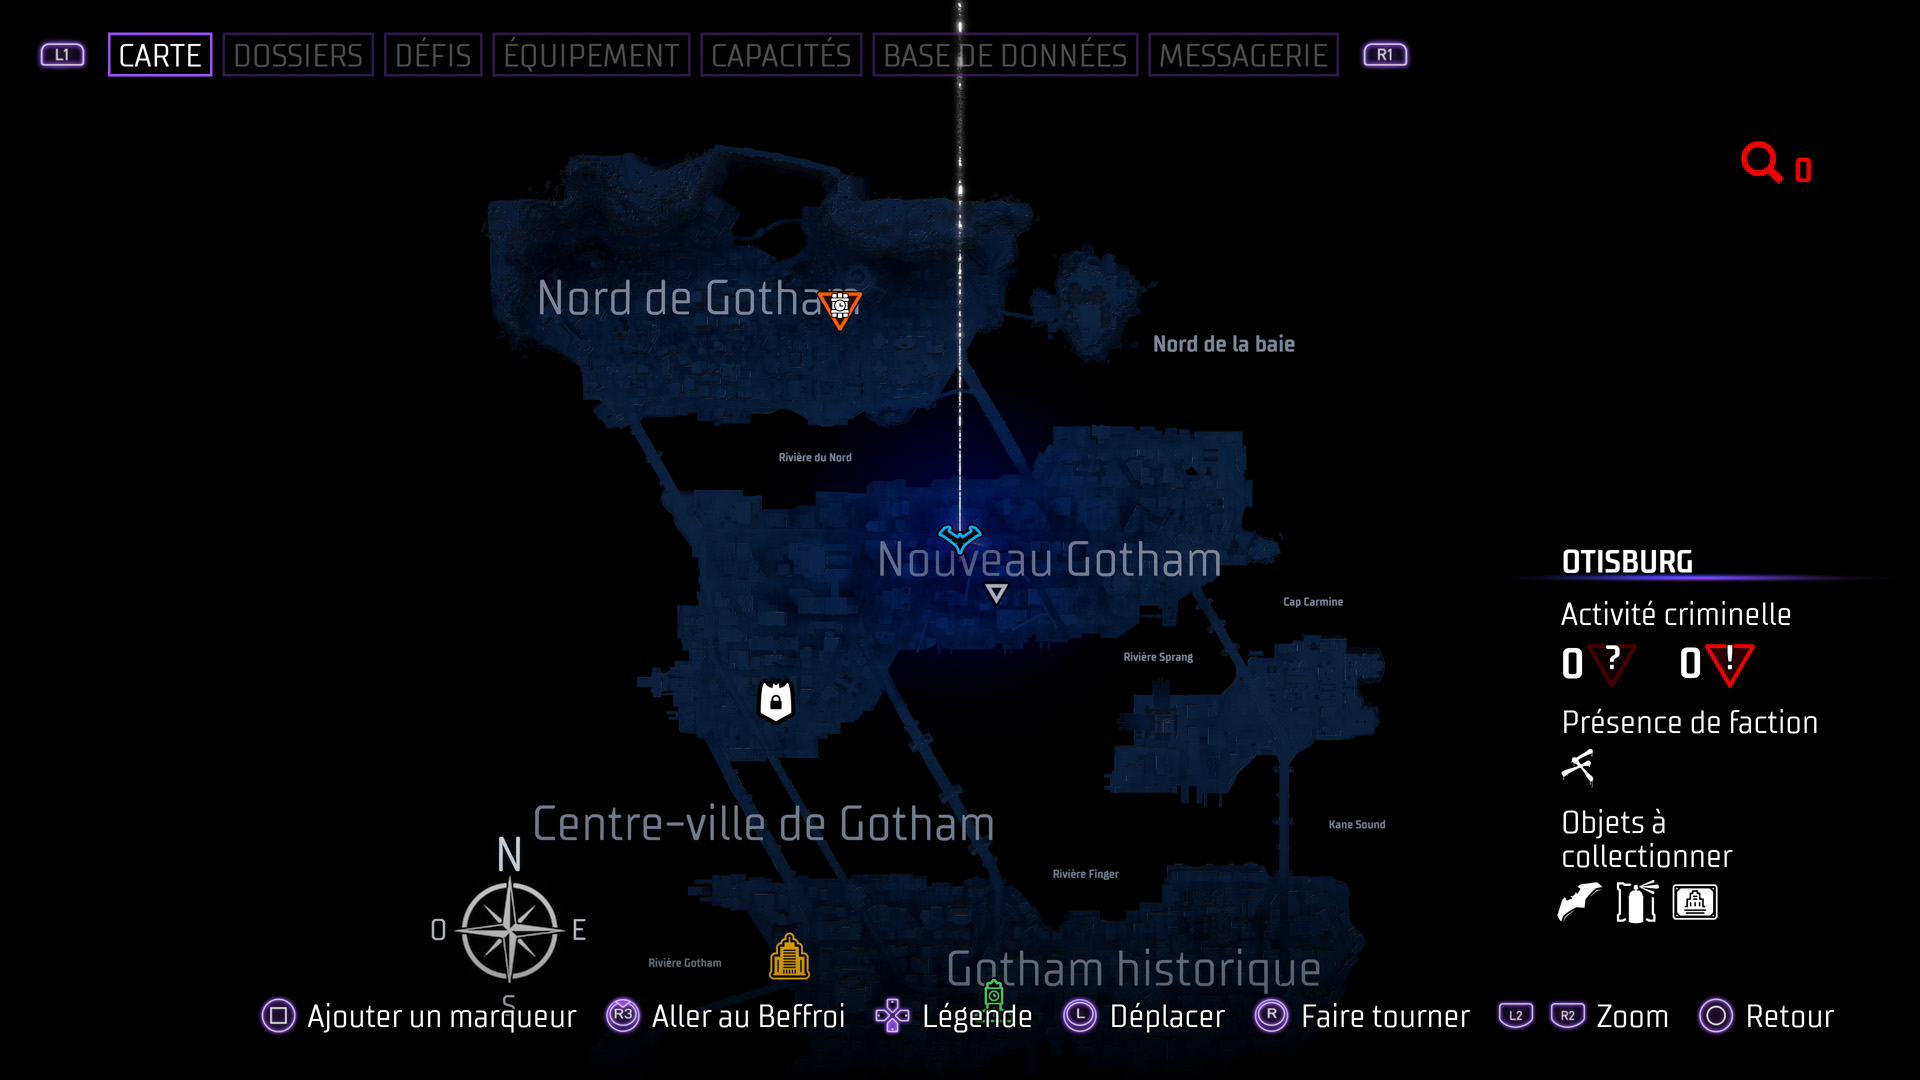 Les batarangs - nouveau gotham - otisburg - station de métro aérien - gotham knights